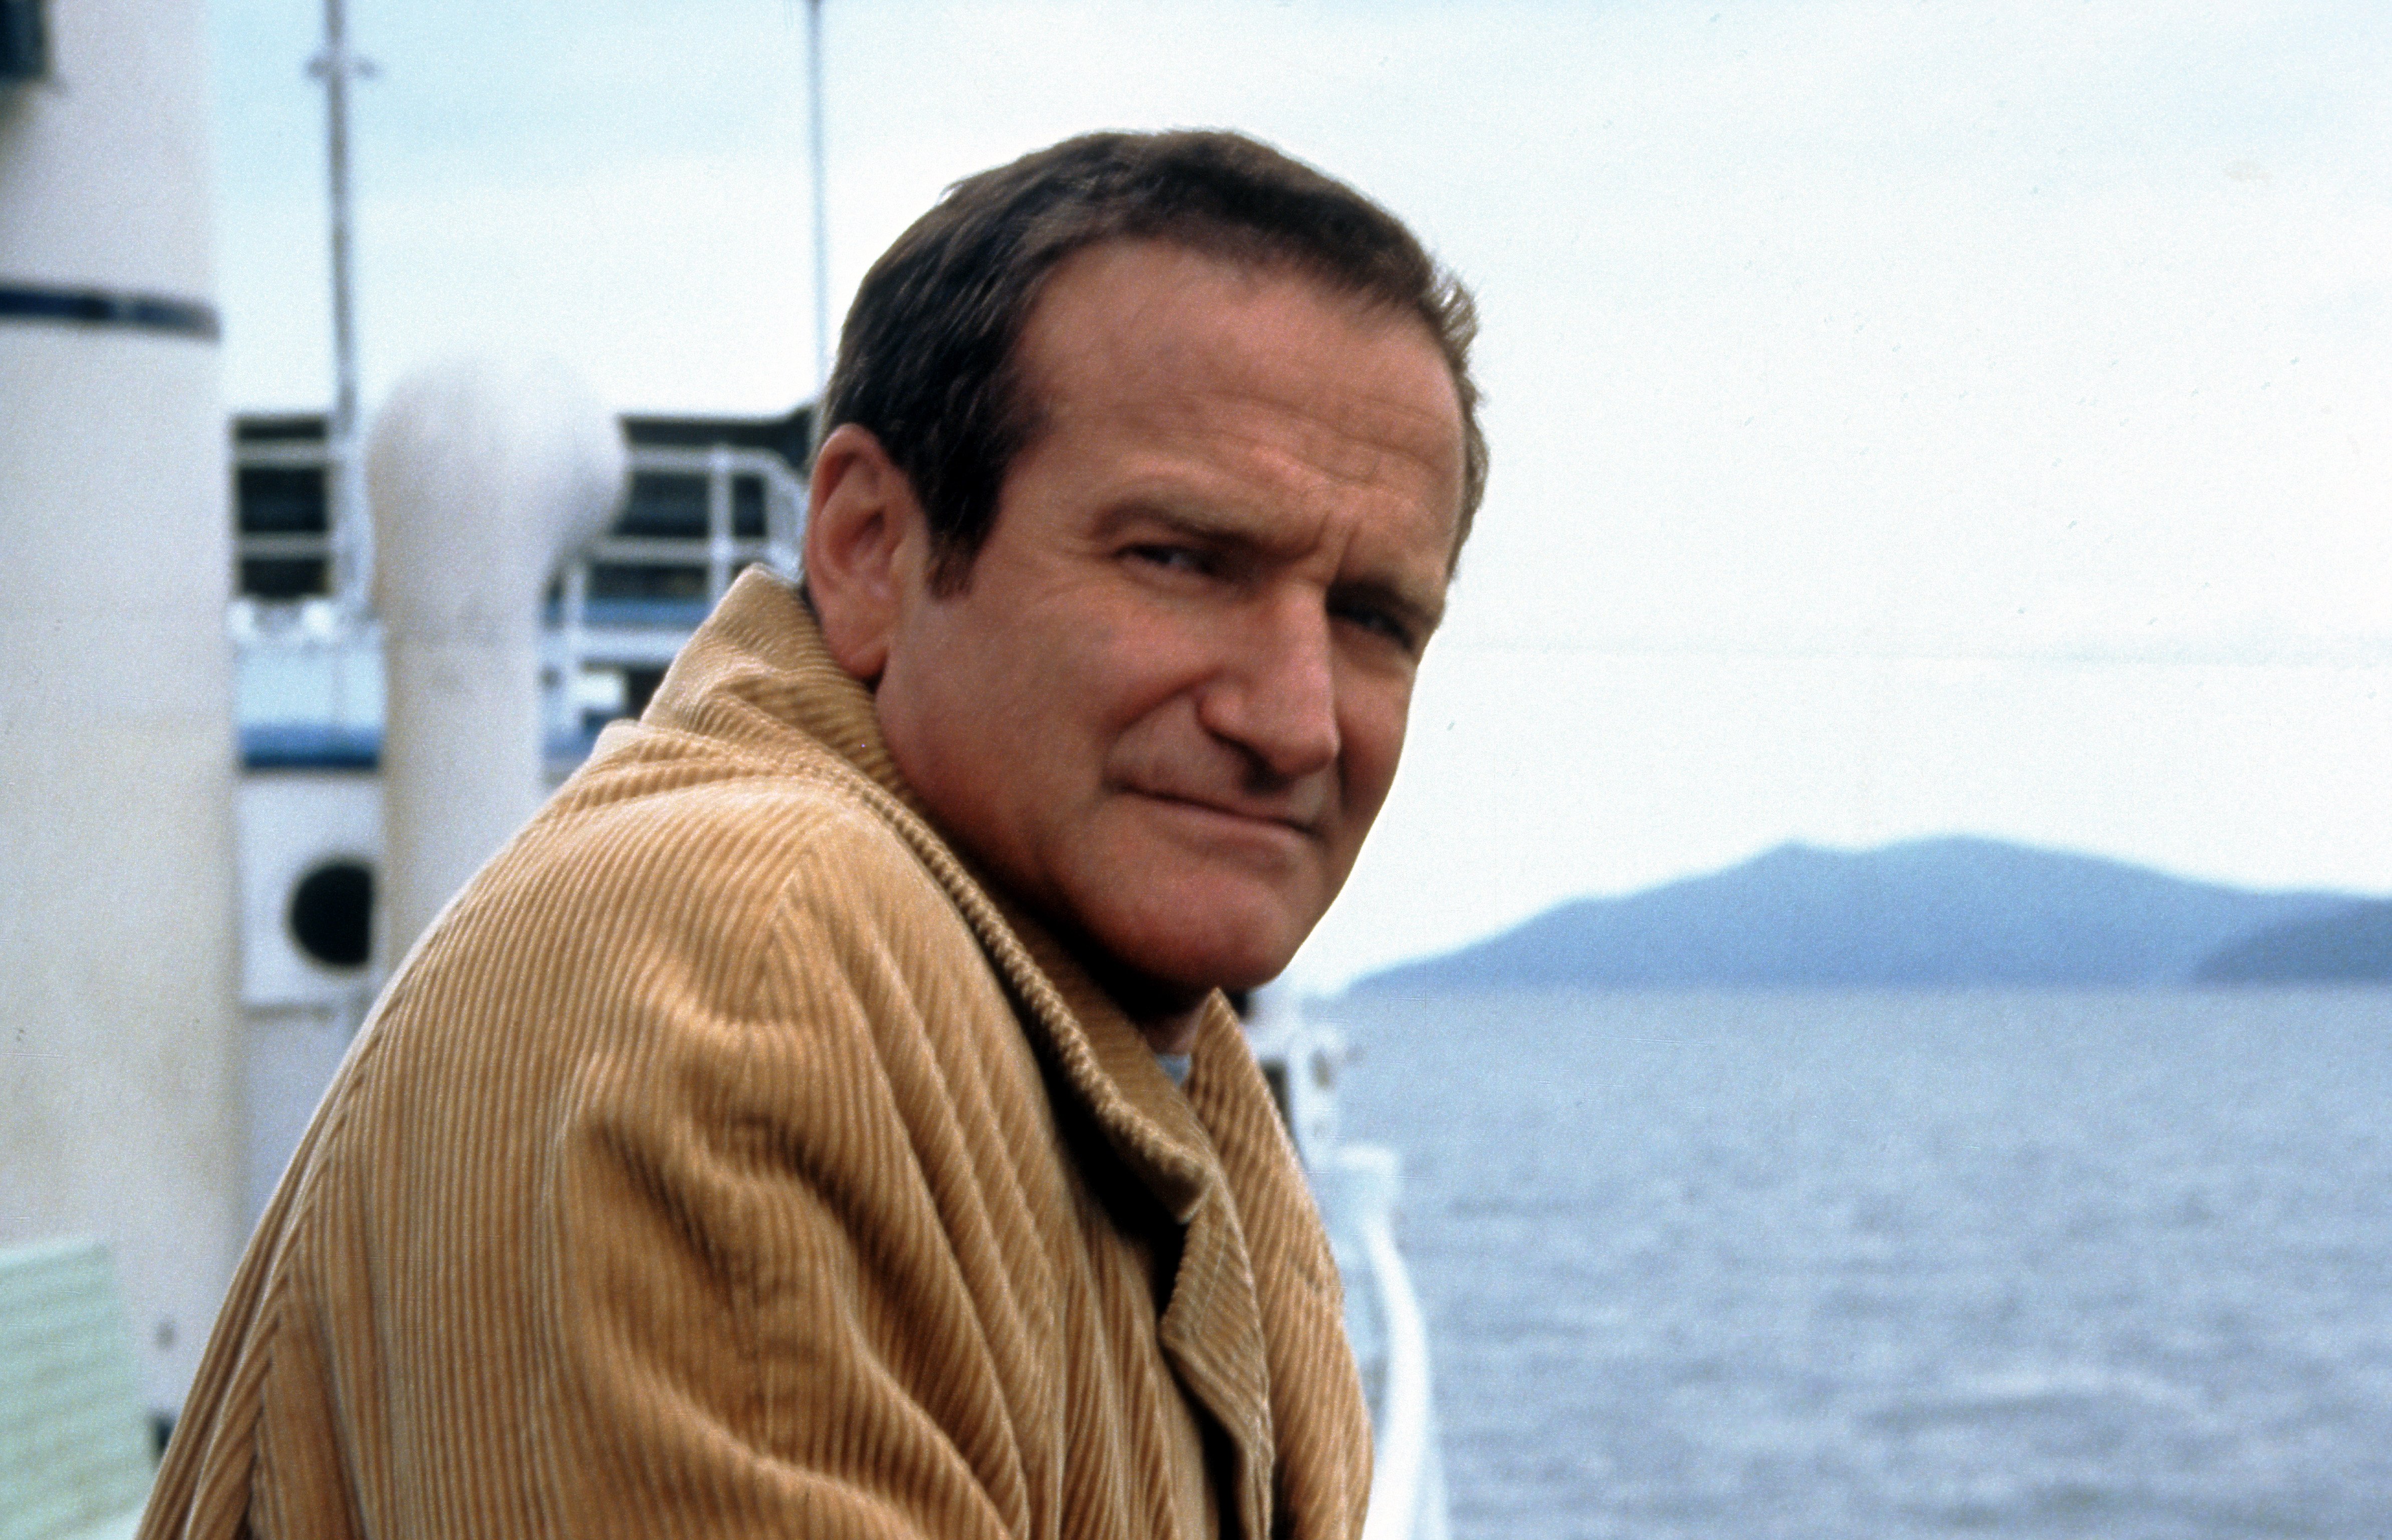 Robin Williams fährt auf einem Boot in einer Szene aus dem Film "Insomnia" von 2002 | Quelle: Getty Images